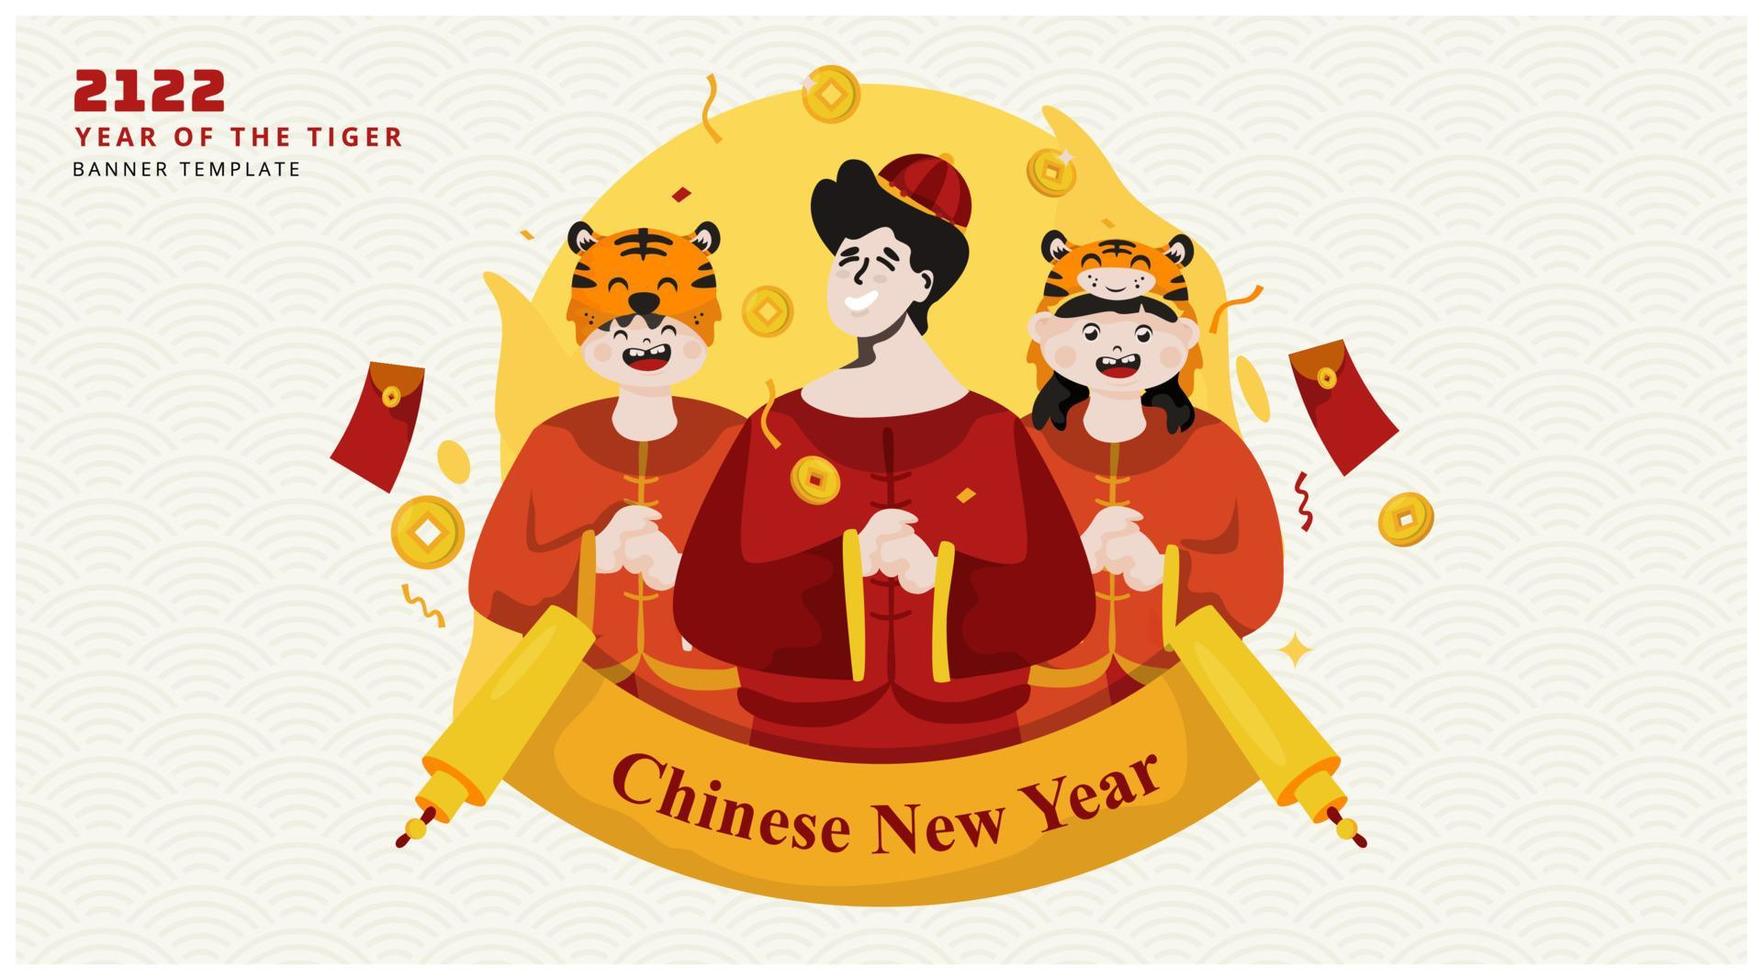 feliz ano novo chinês saudação da família no design do banner vetor